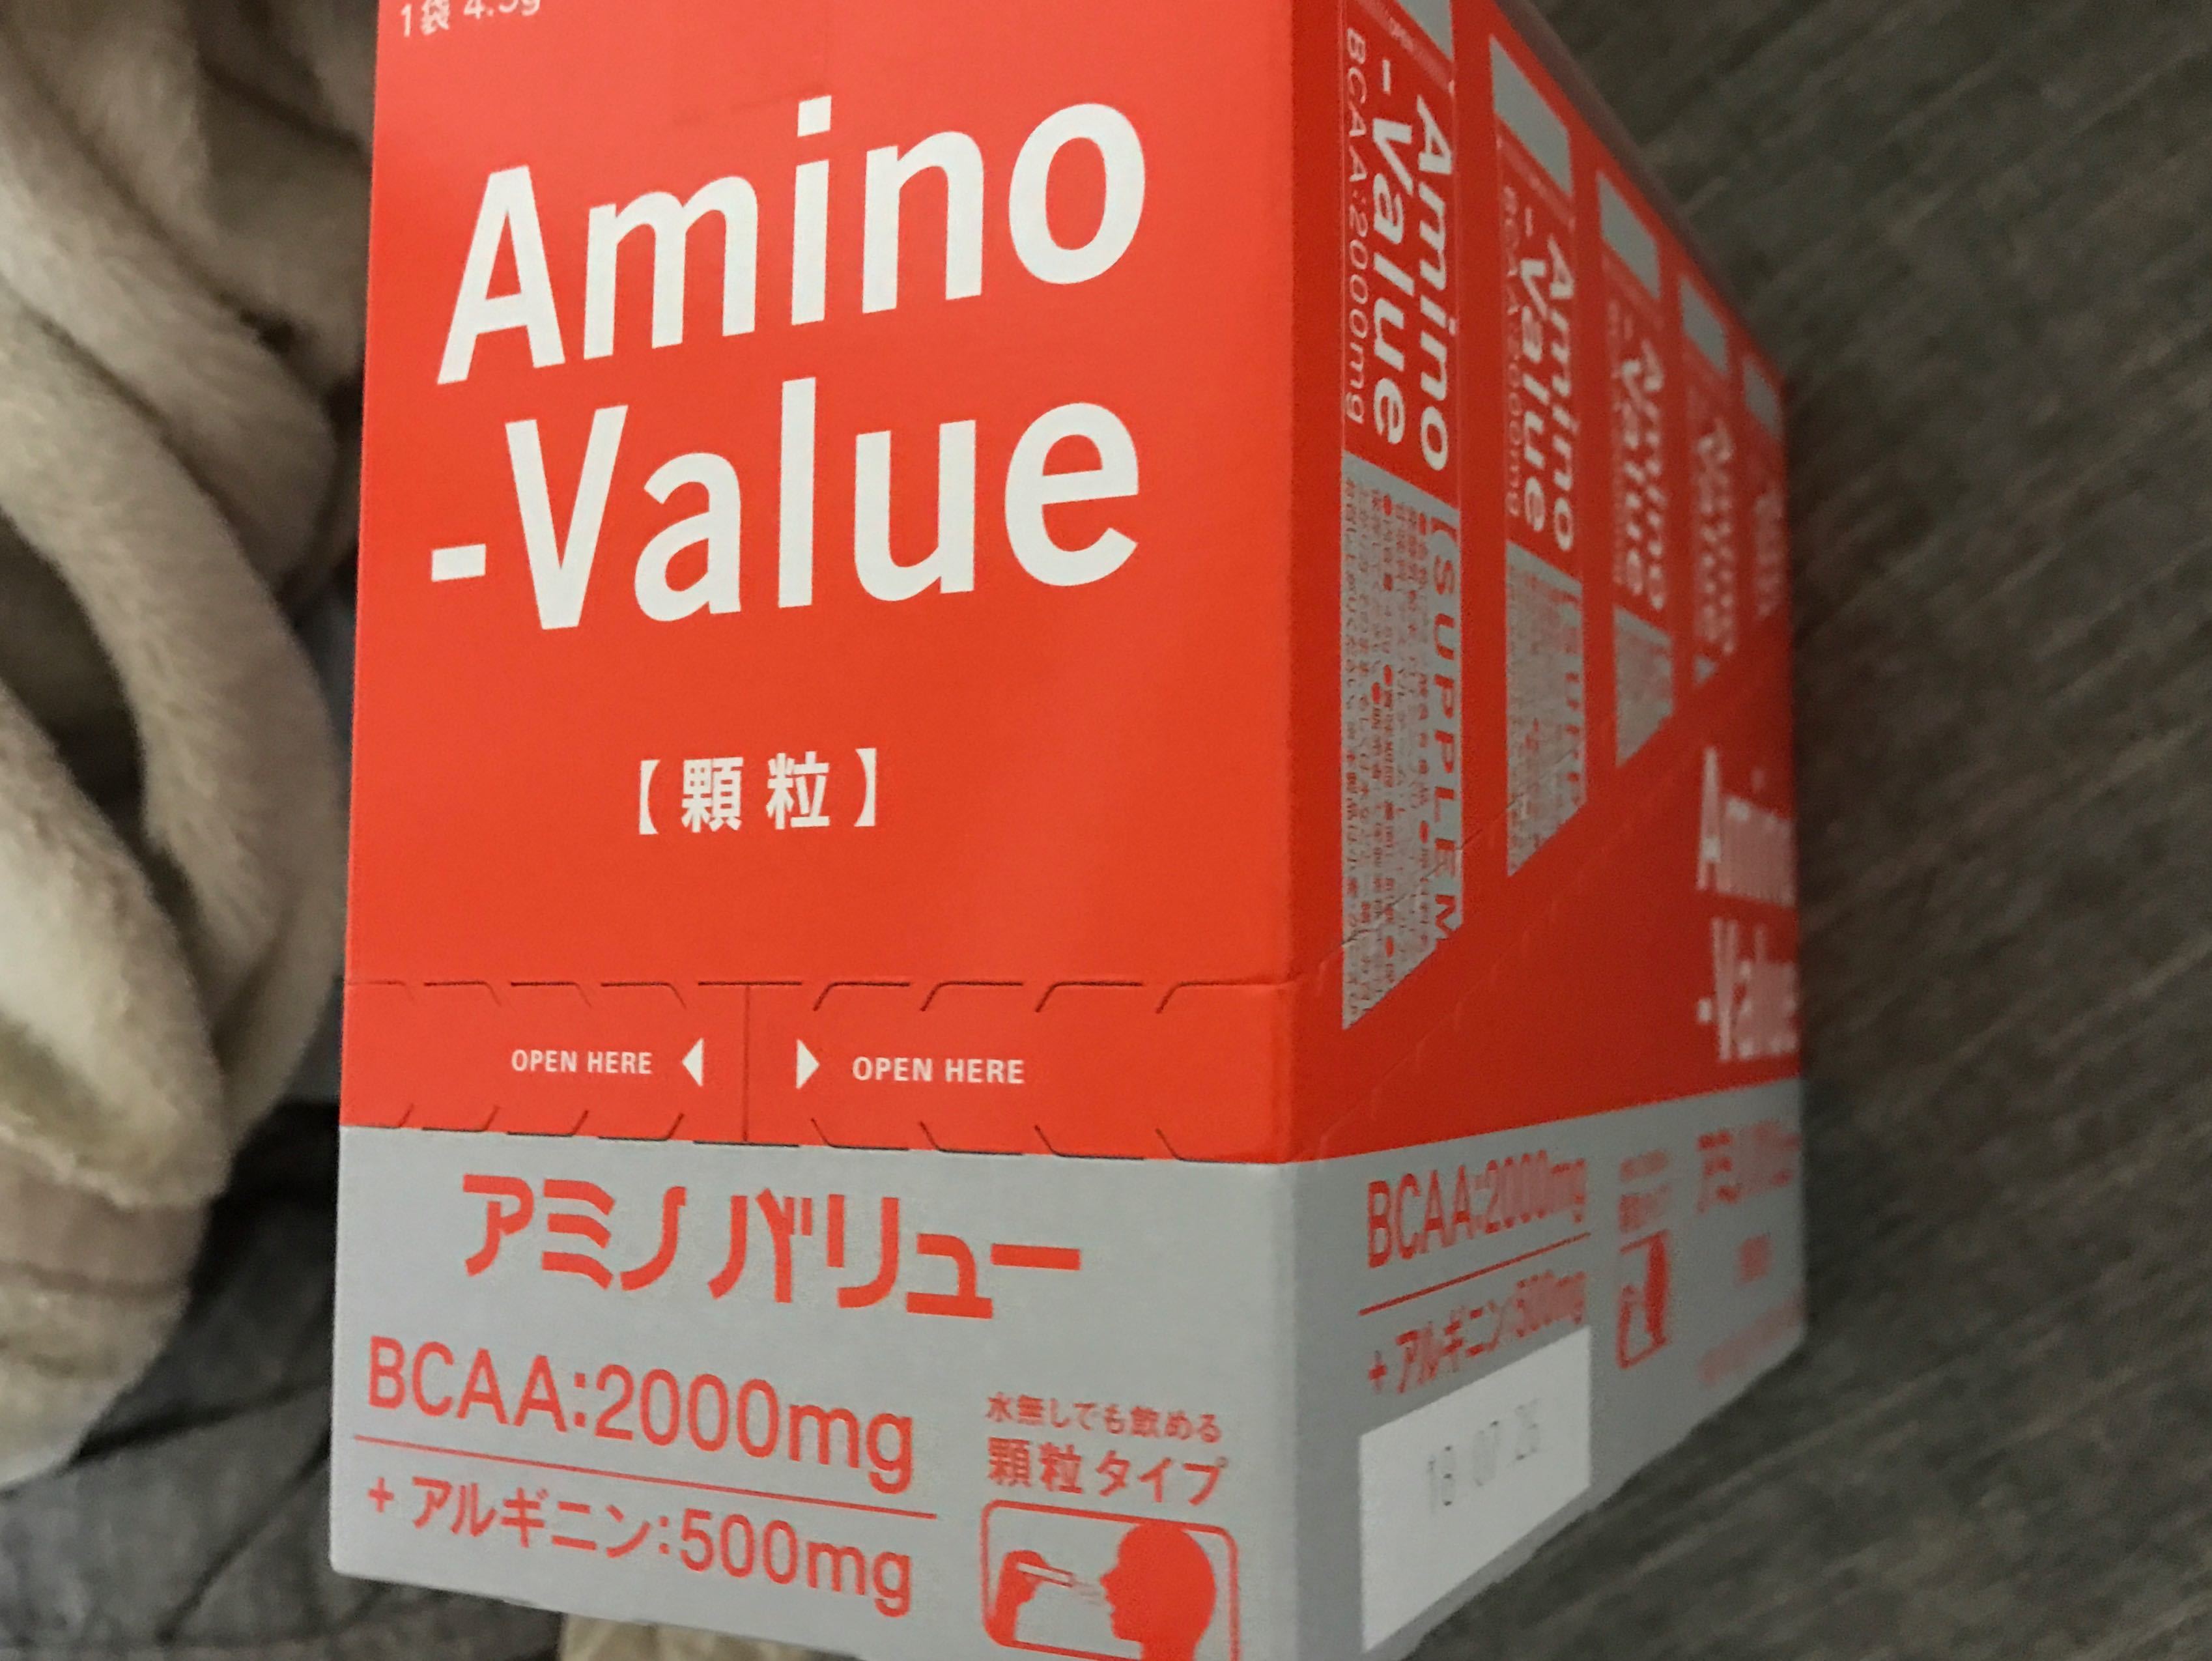 Amino-Value